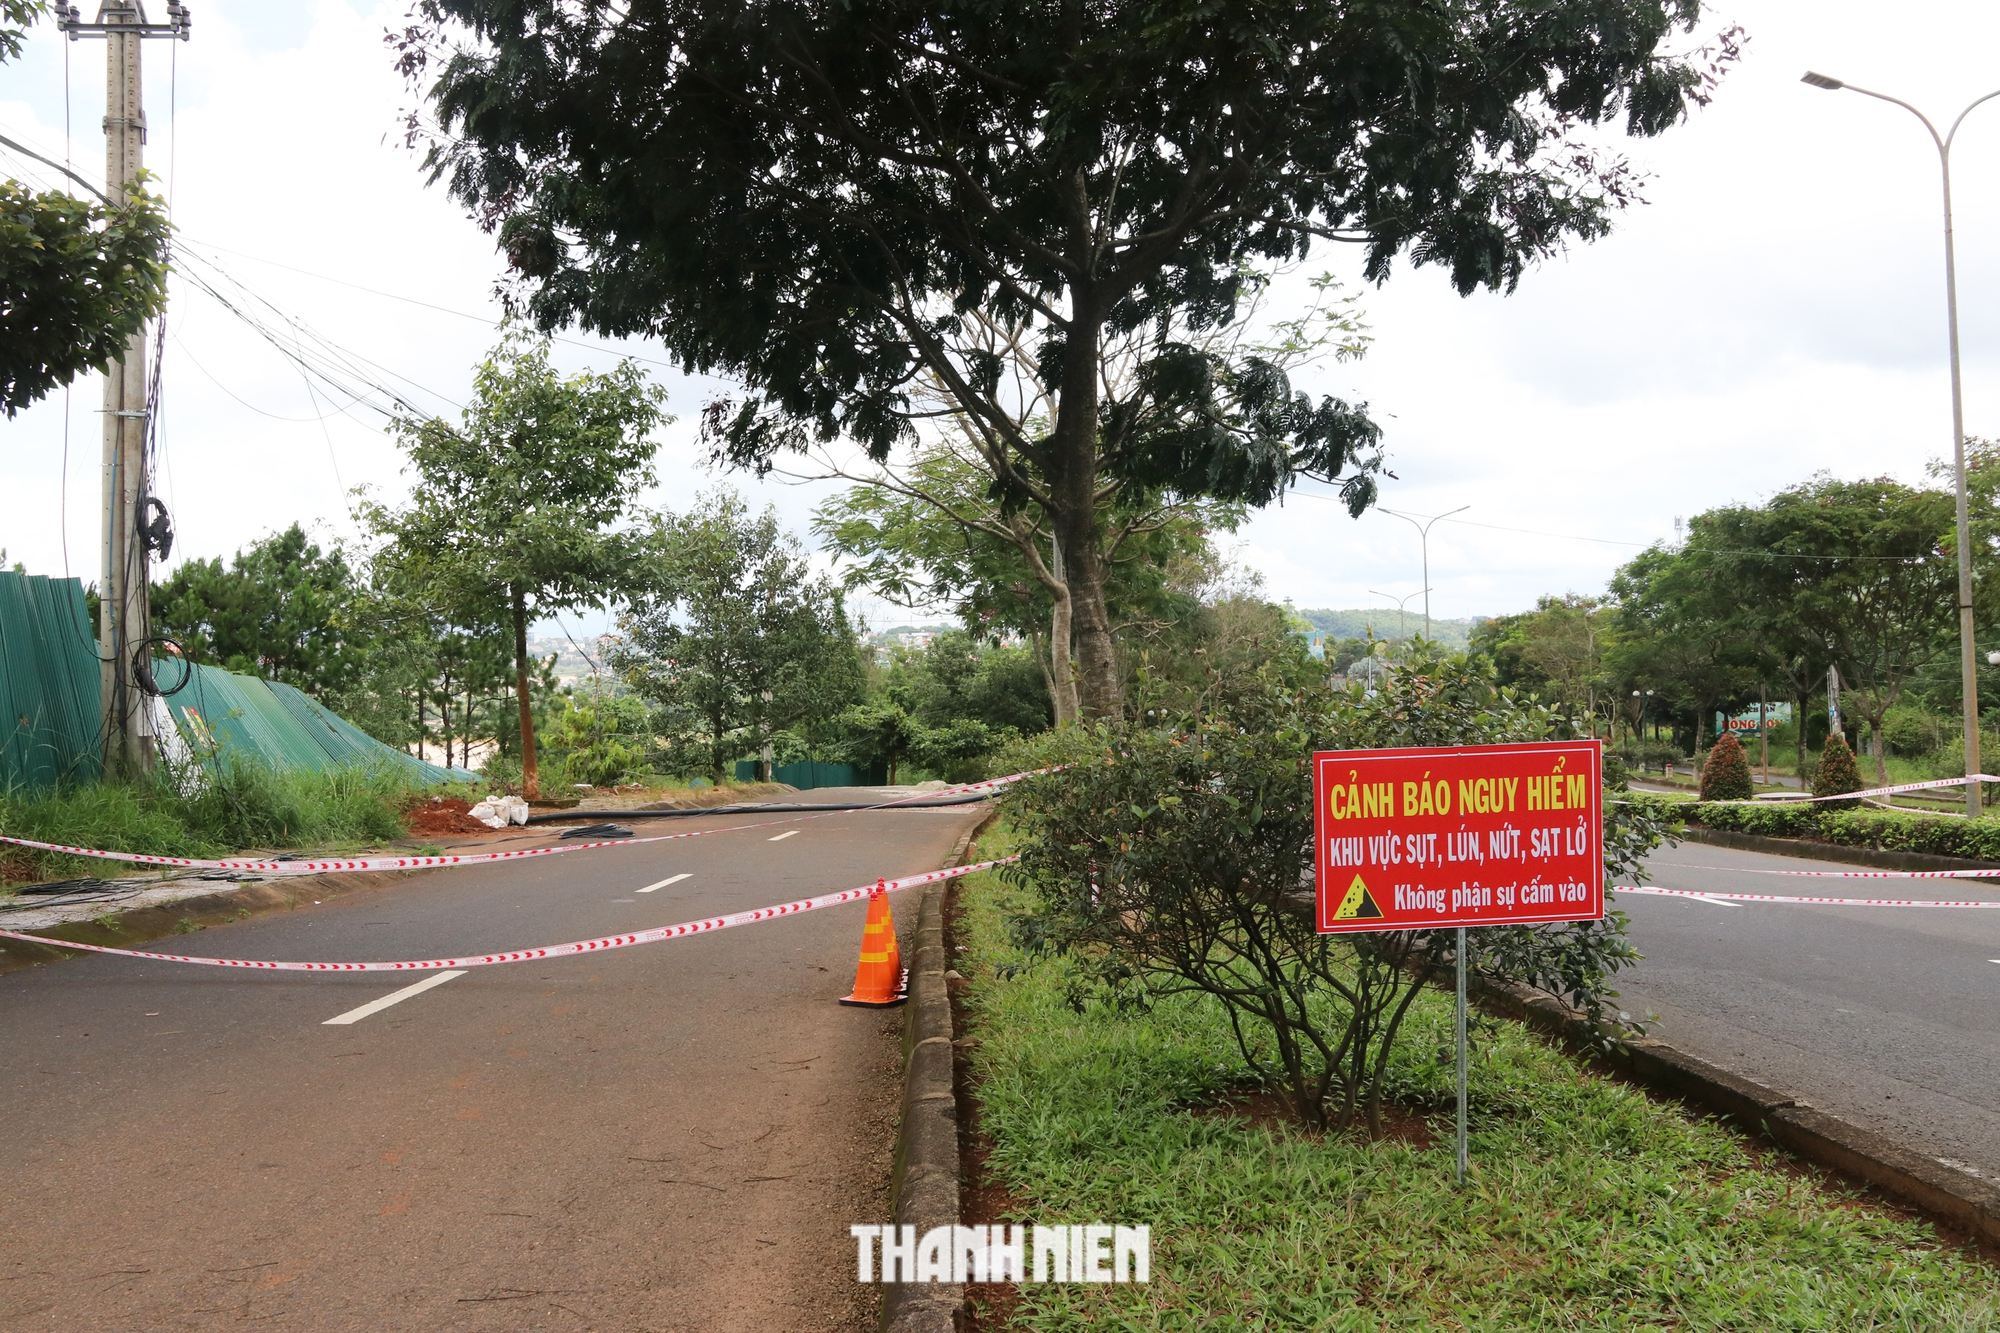 Cận cảnh QL14 qua tỉnh Đắk Nông nứt gãy ngày càng nghiêm trọng